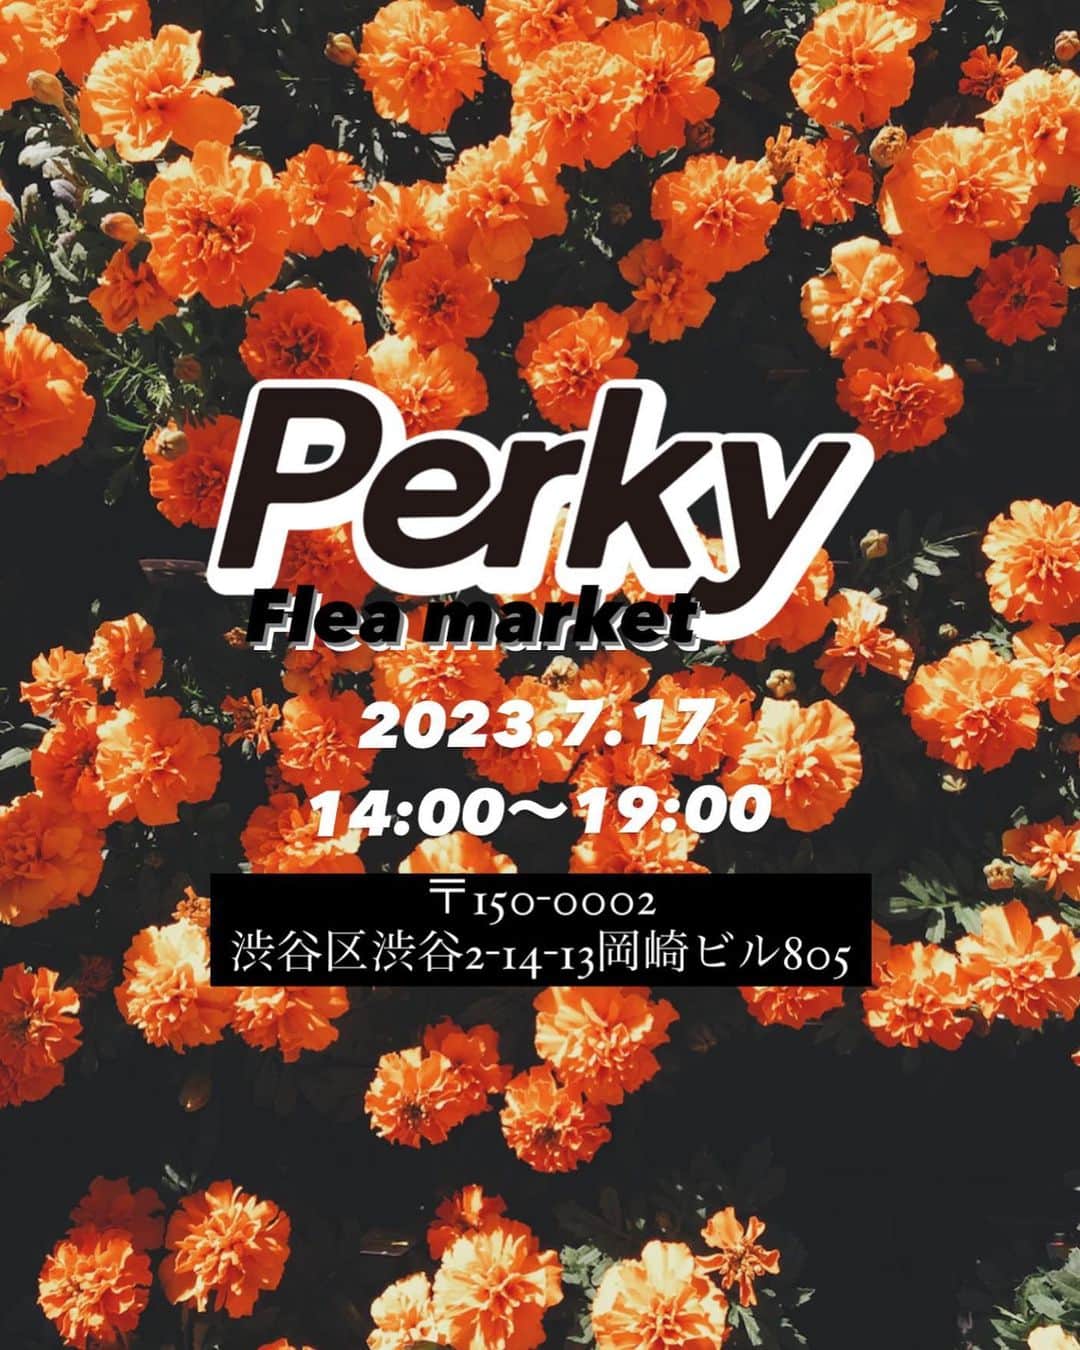 赤木 桃 #ちゃんものインスタグラム：「@perky_tokyo 7月17日はPerkyフリマ🛍️お友だち誘ってフリマします🤩  2023.7.17(祝月)14:00〜19:00くらい 銀座線渋谷駅から徒歩5分👍🏻マイバック持参推奨🙇  出店者はモデル、スタイリストなど。。。スレッズに書いてみた📝メンズ・レディース共にかわいいお洋服たくさんあると思うのでぜひ遊びに来てください✌🏻」